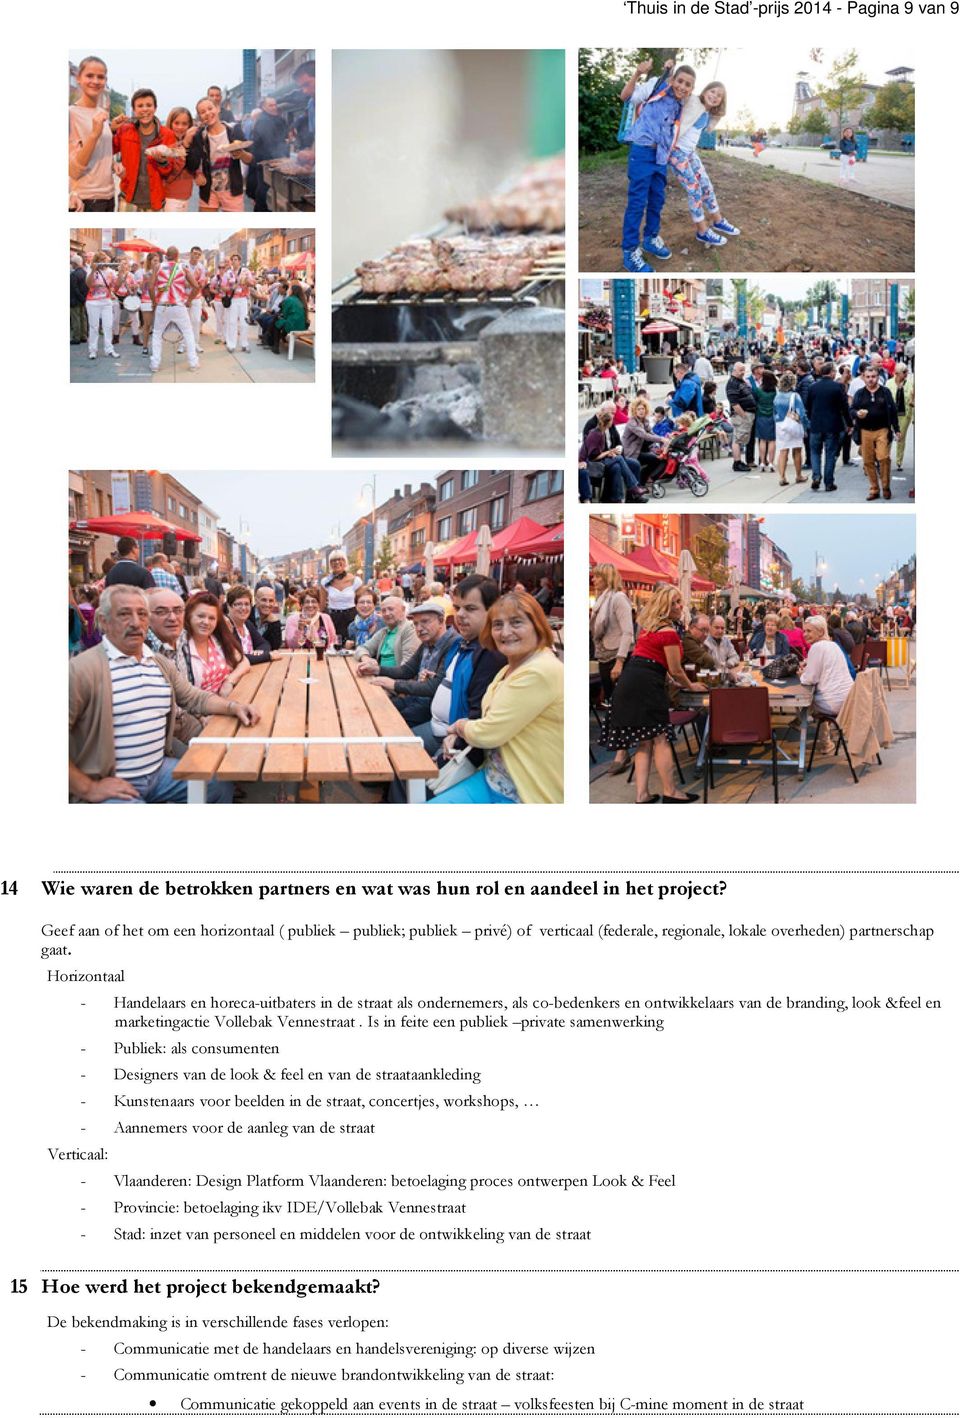 Horizontaal Verticaal: - Handelaars en horeca-uitbaters in de straat als ondernemers, als co-bedenkers en ontwikkelaars van de branding, look &feel en marketingactie Vollebak Vennestraat.